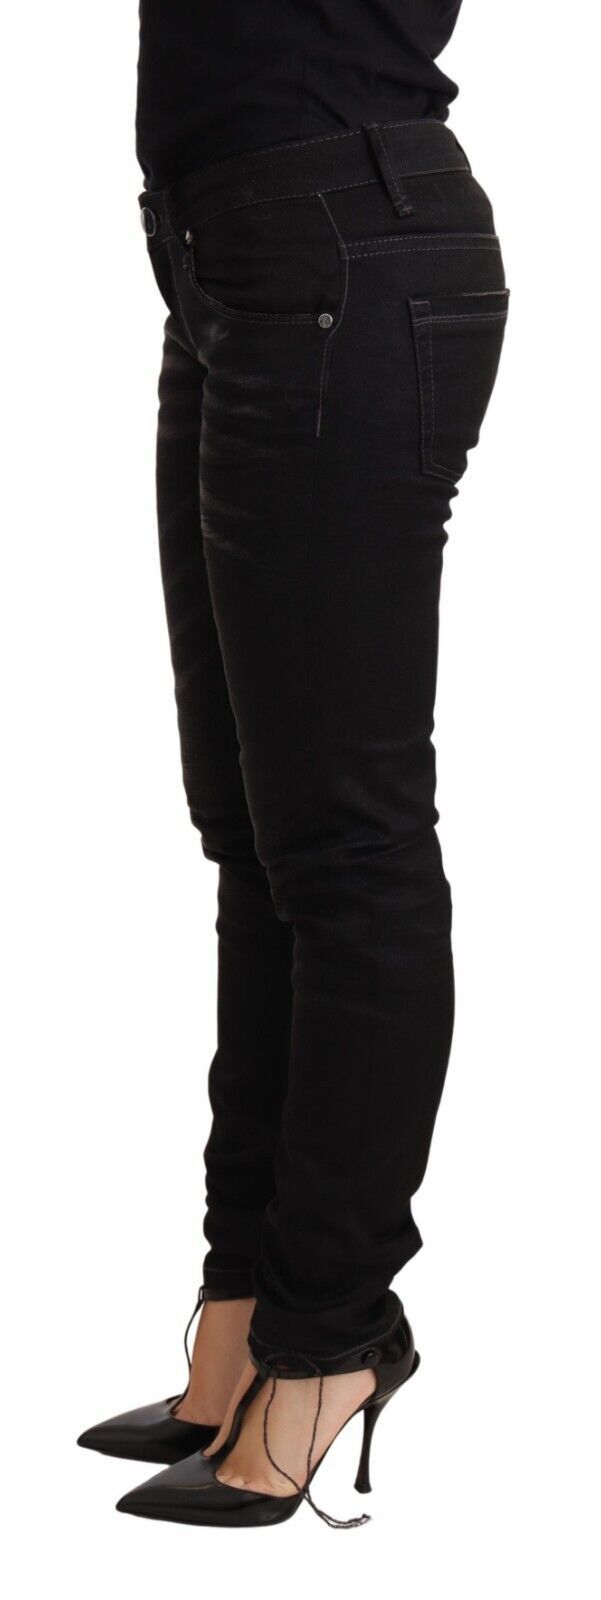 Acht Black Washed Cotton Slim Fit Denim Low Waist Trouser Women's Jeans